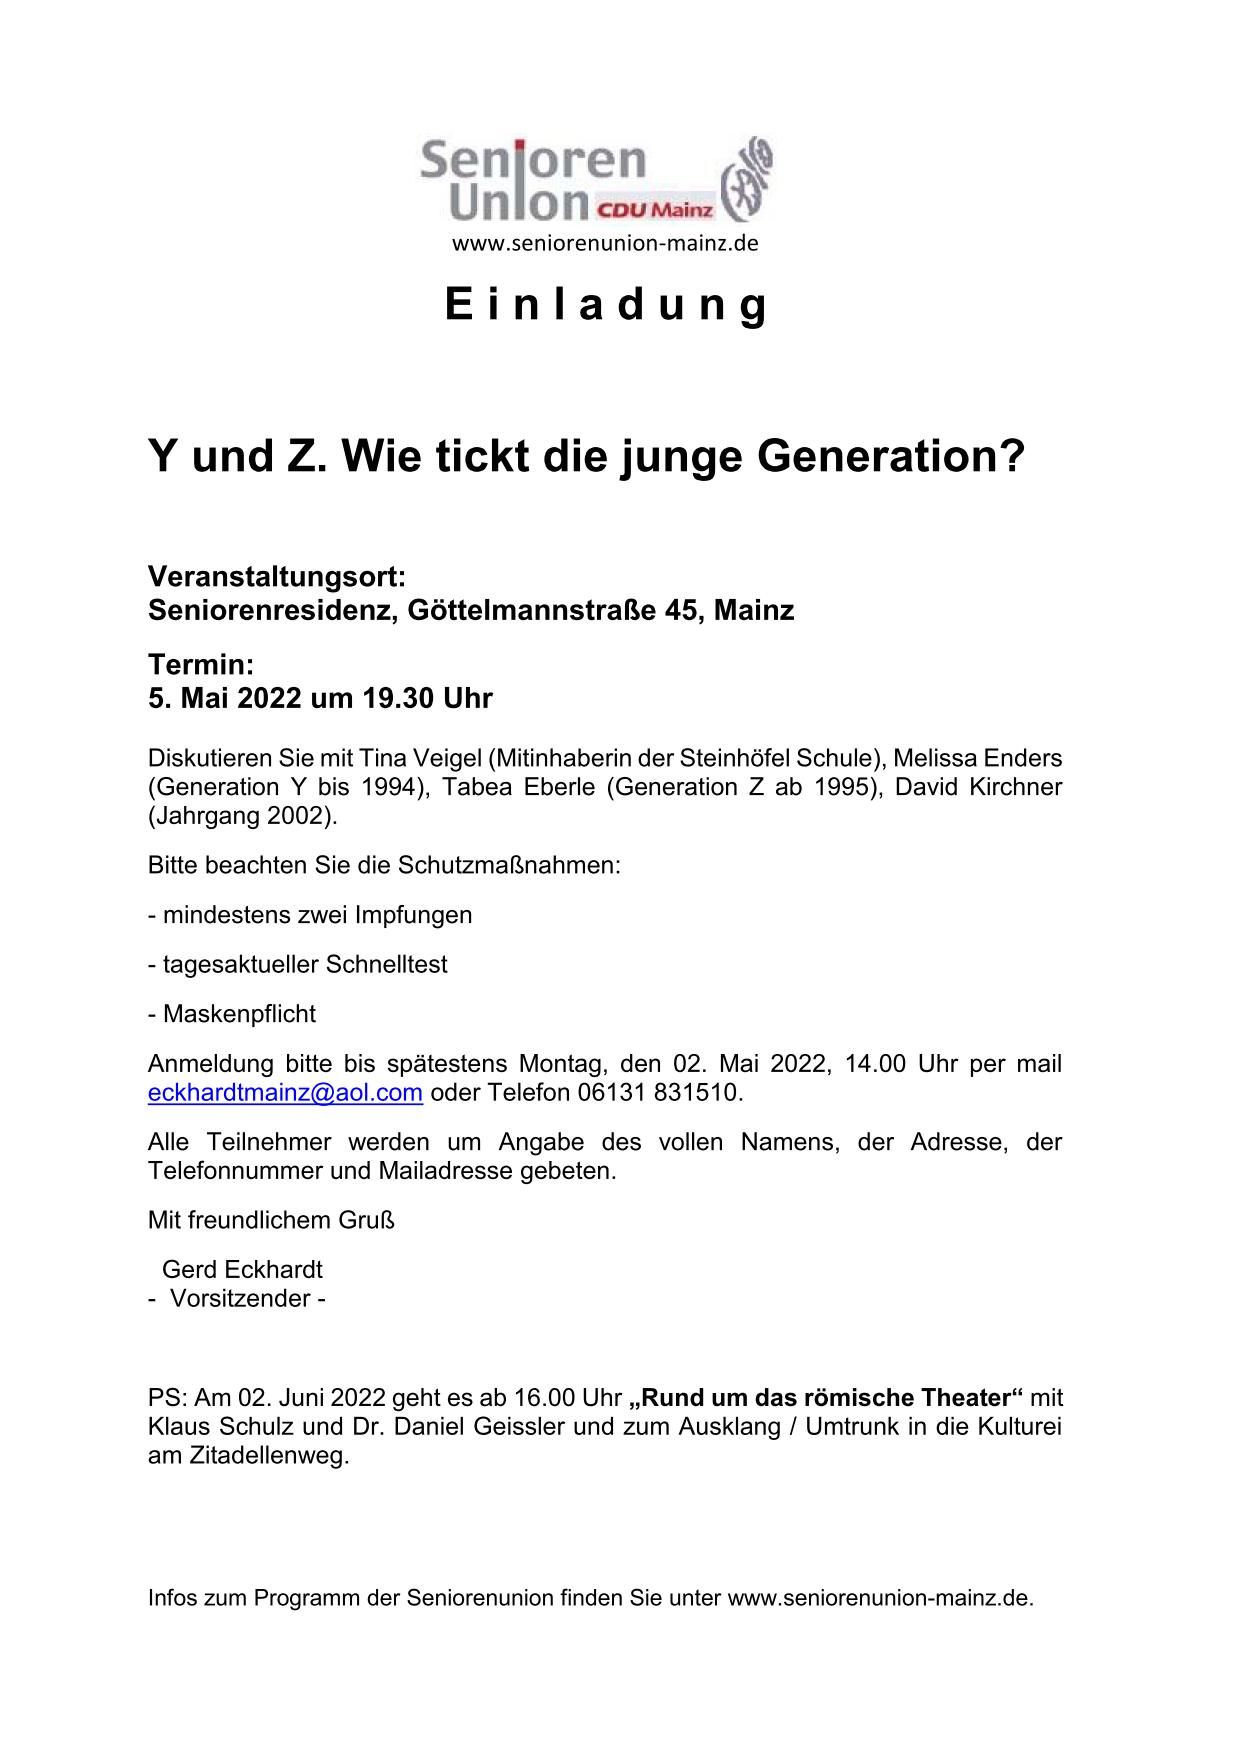 2022 05 02 Y und Z. Wie tickt die junge Generation 01